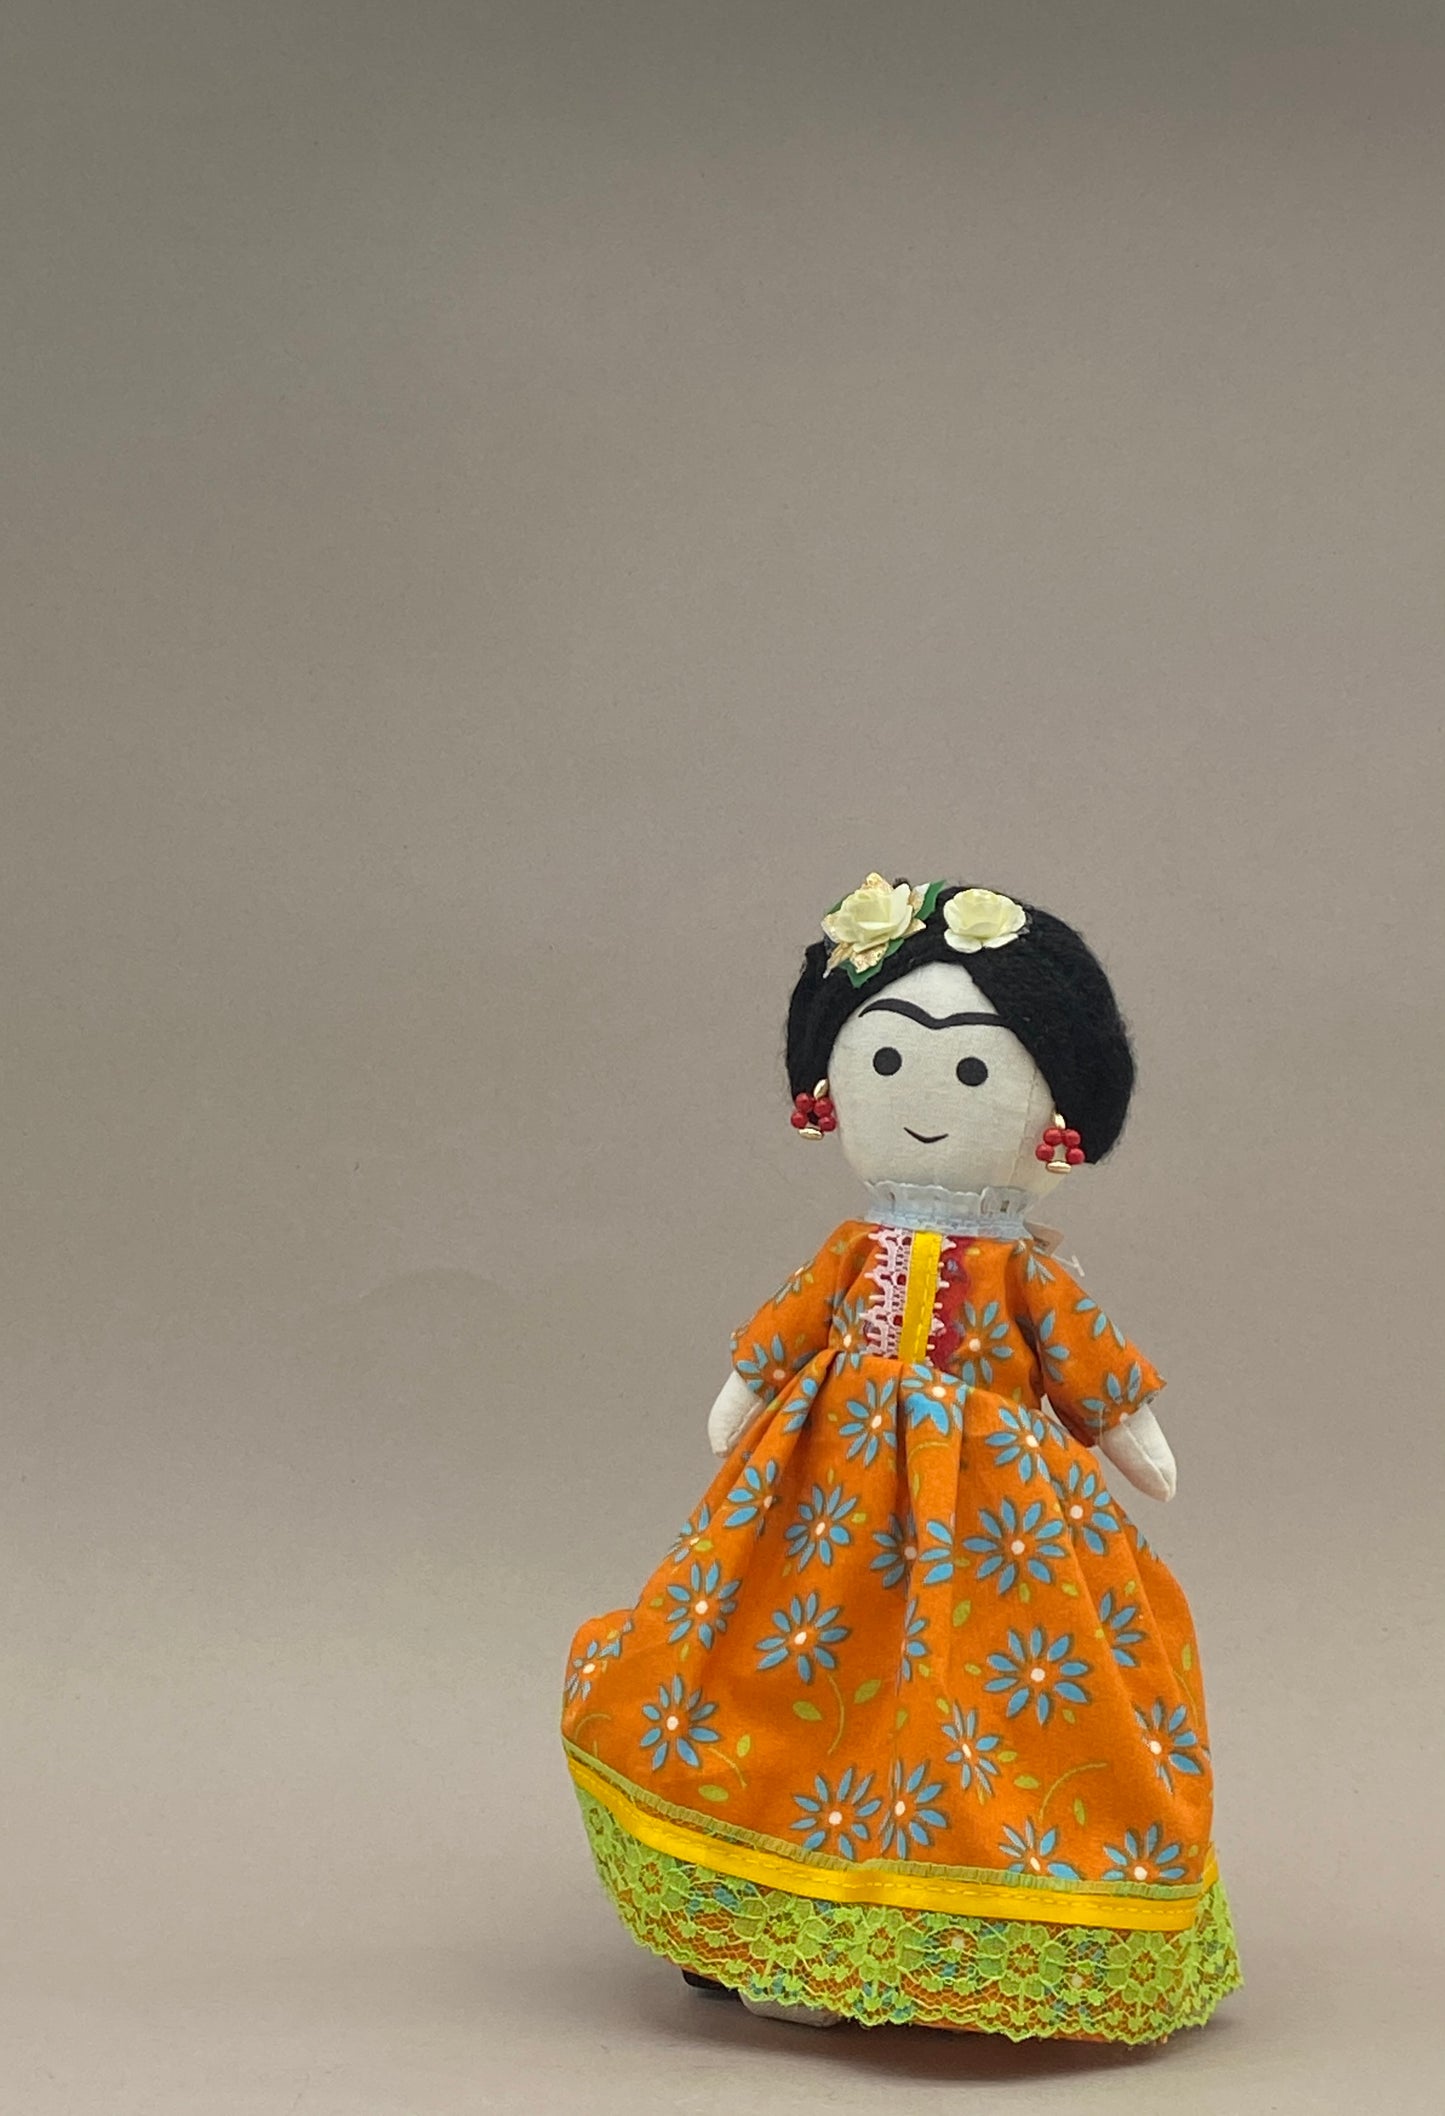 Muñecas de Trapo Frida